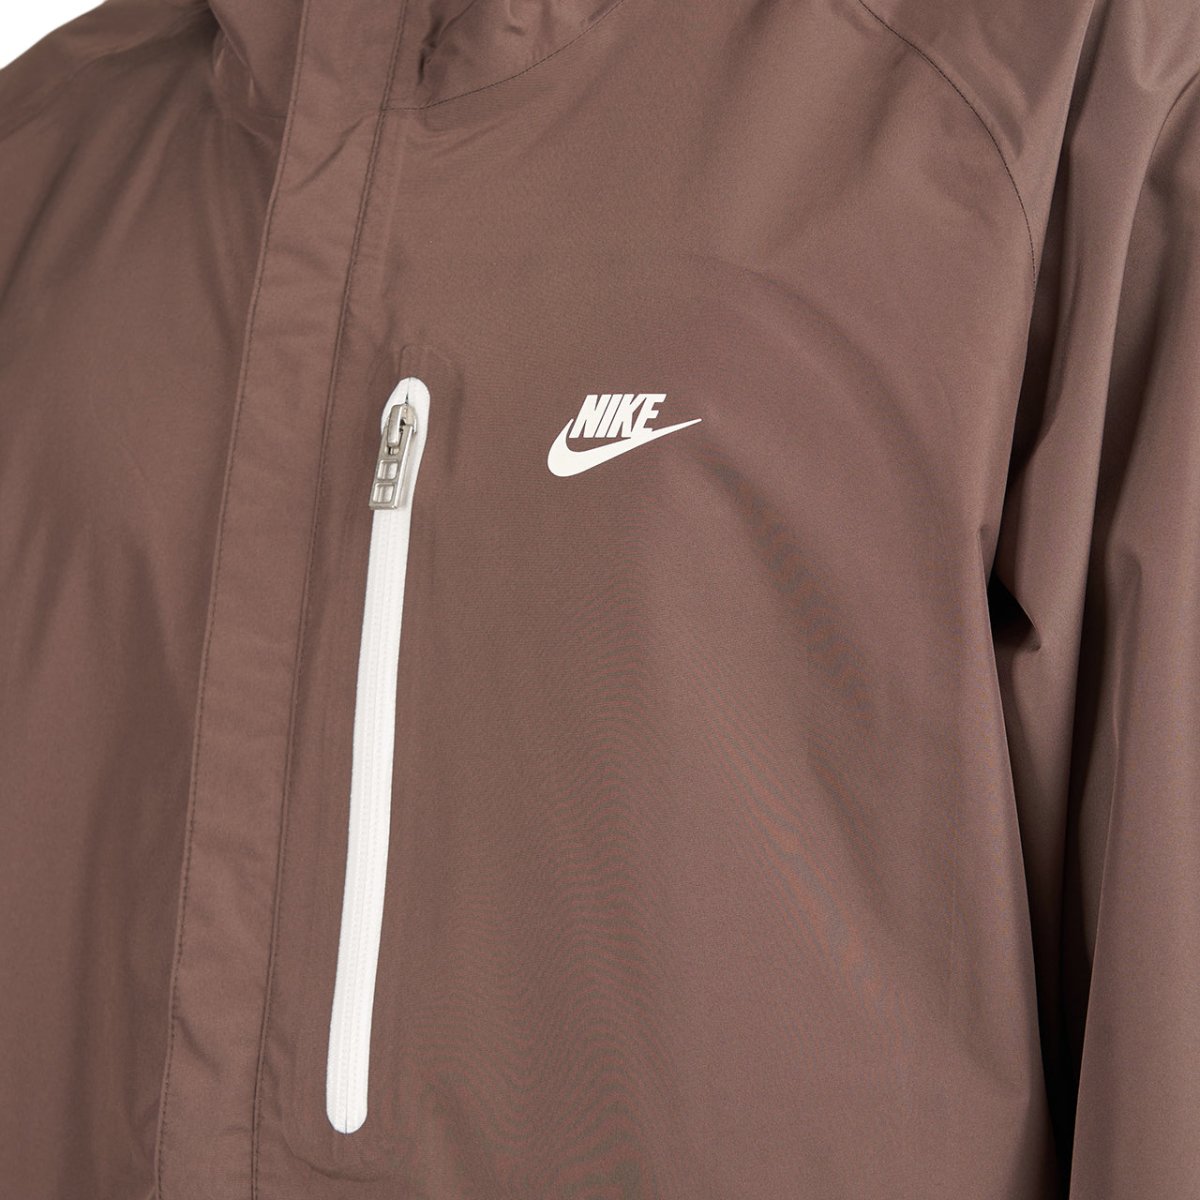 Nike Sportswear Storm-Fit Legacy Hooded Jacket (Braun)  - Allike Store